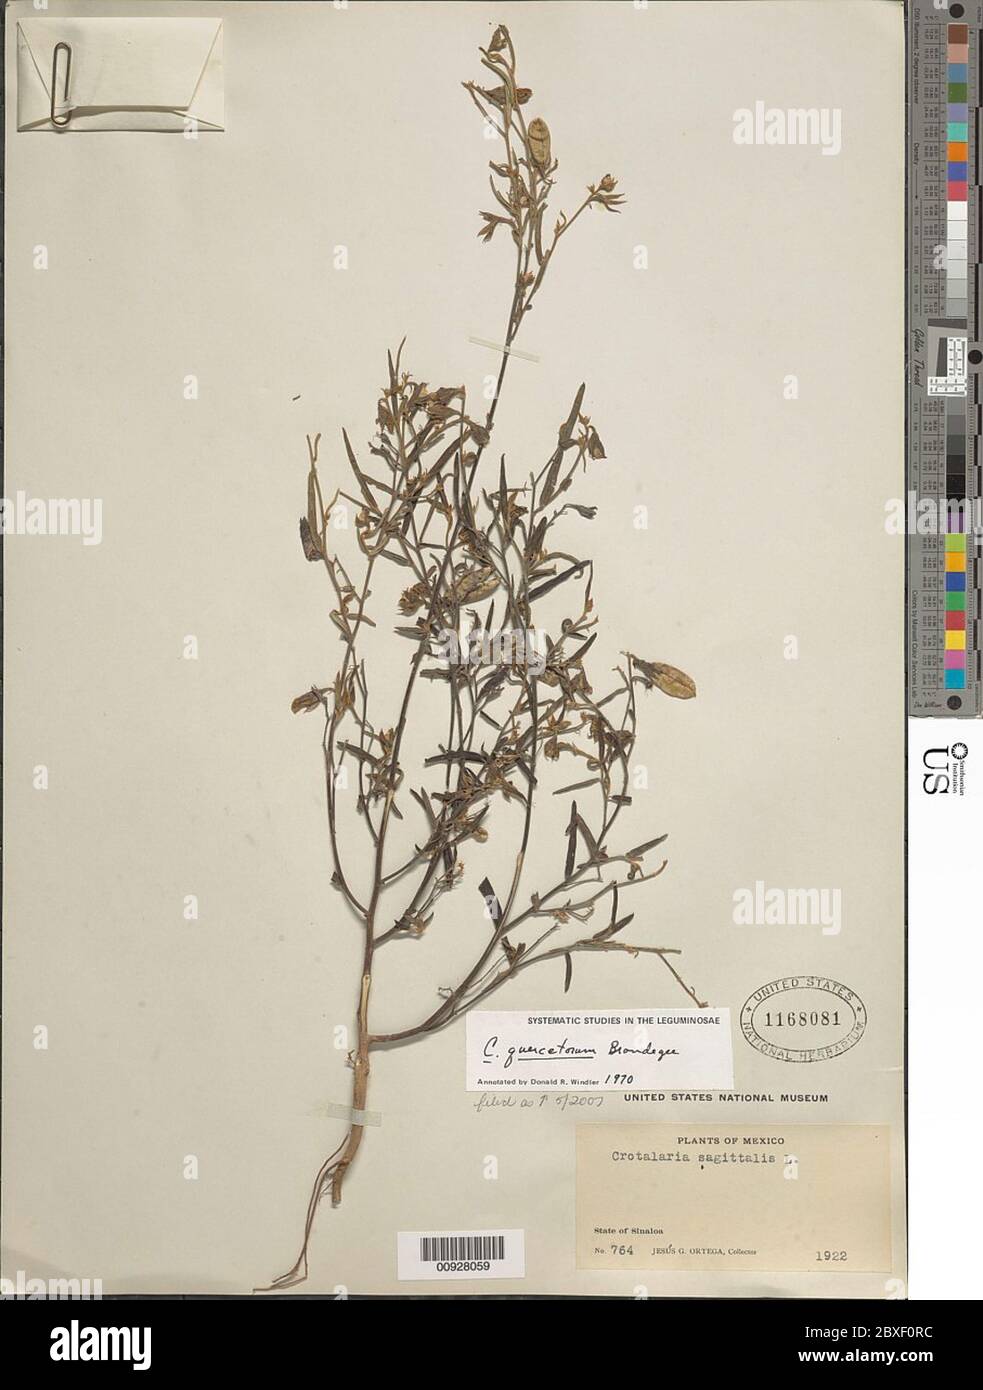 Crotalaria quercetorum Brandegee Crotalaria quercetorum Brandegee. Stock Photo